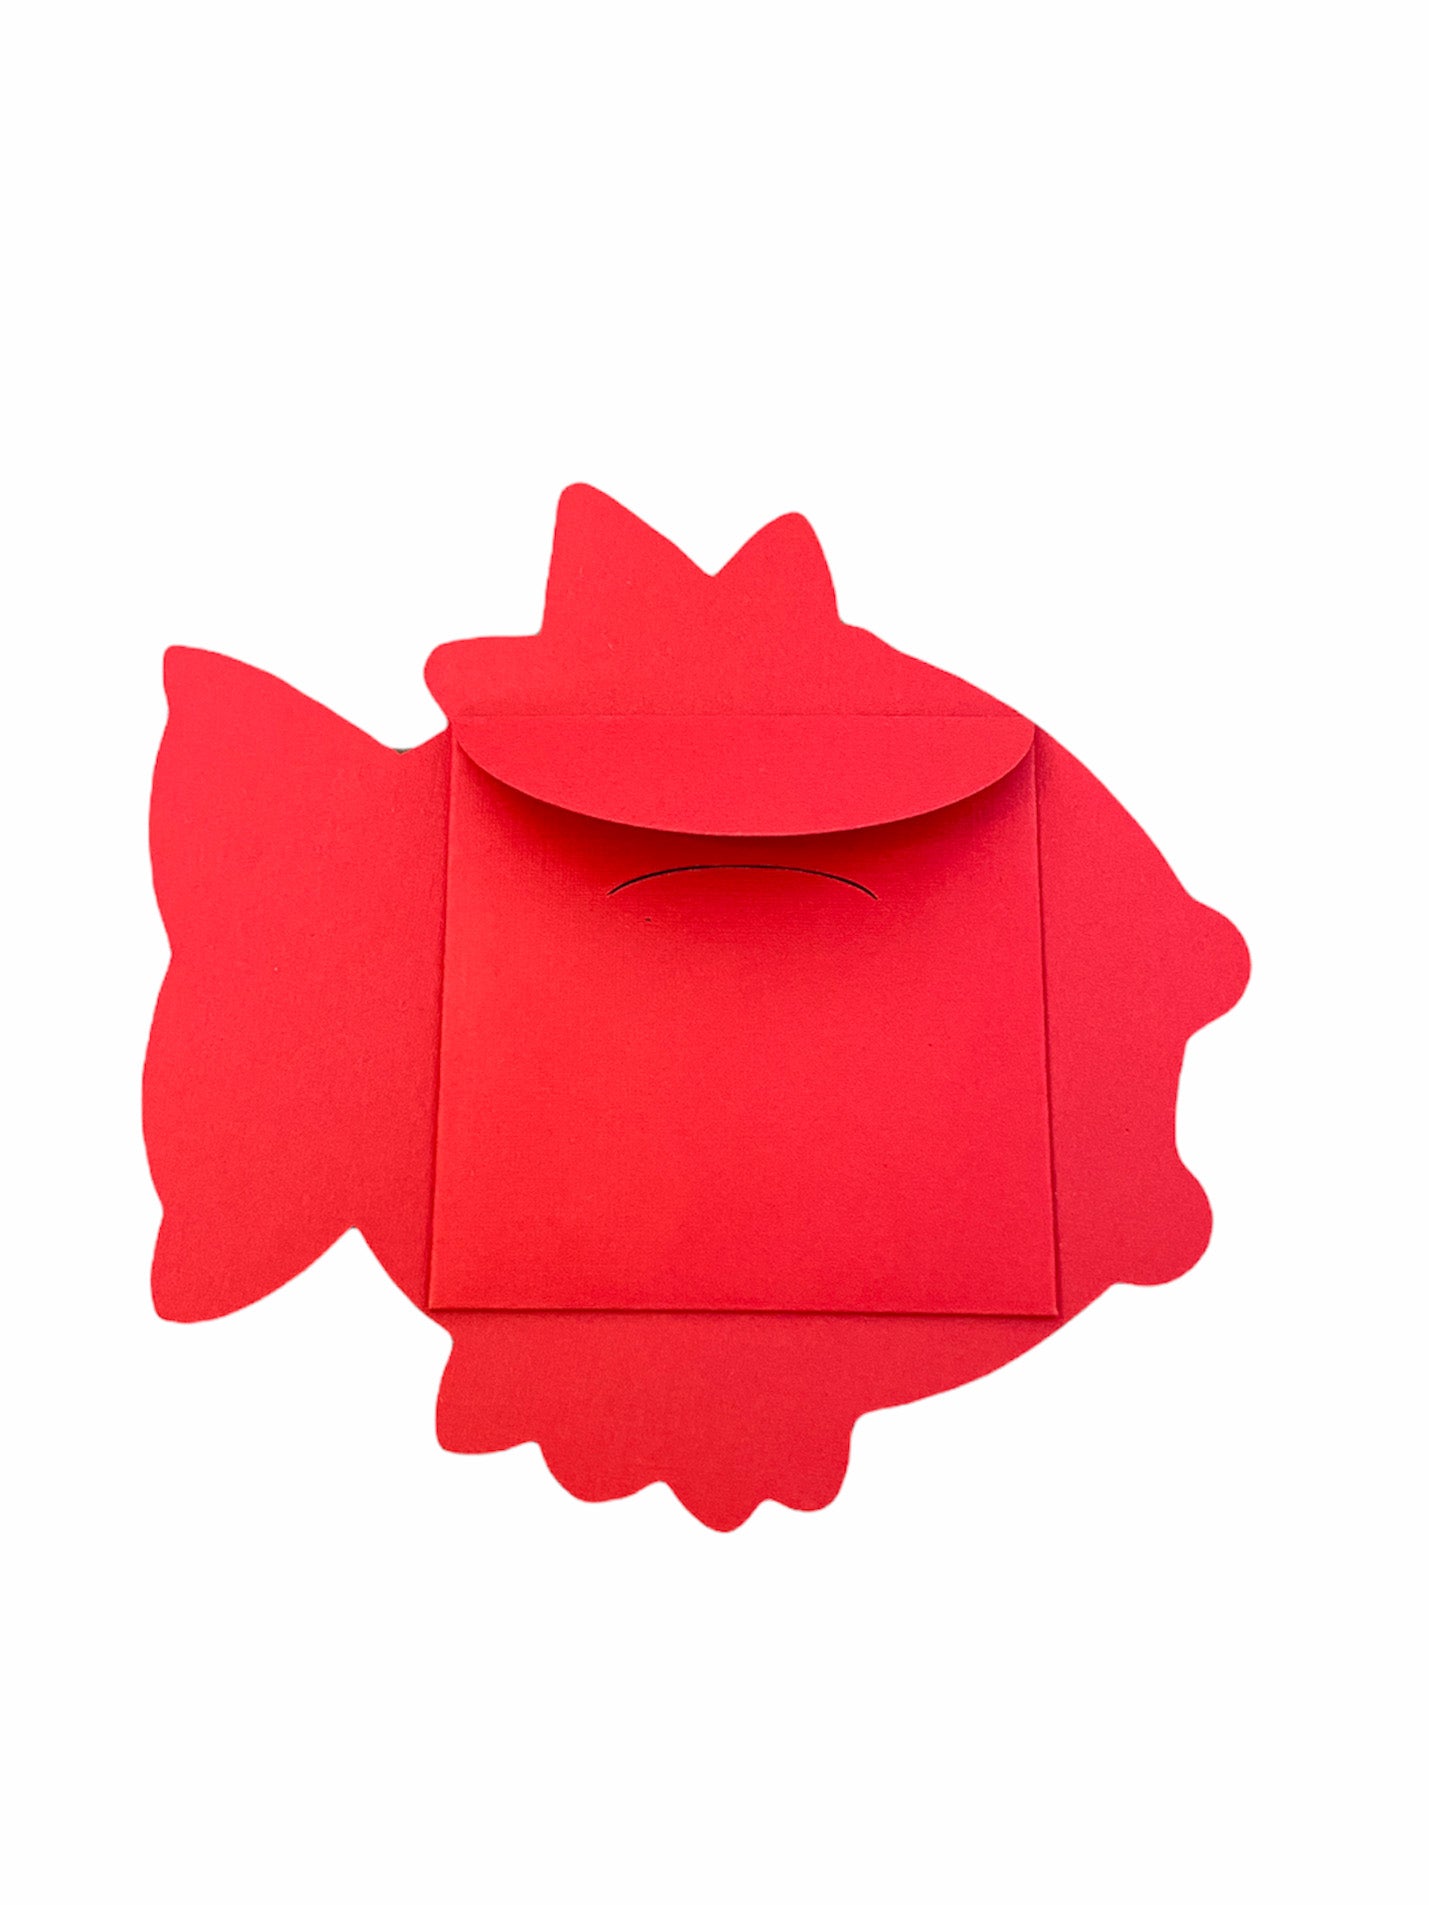 Chunkémon Magikarp Red Envelope